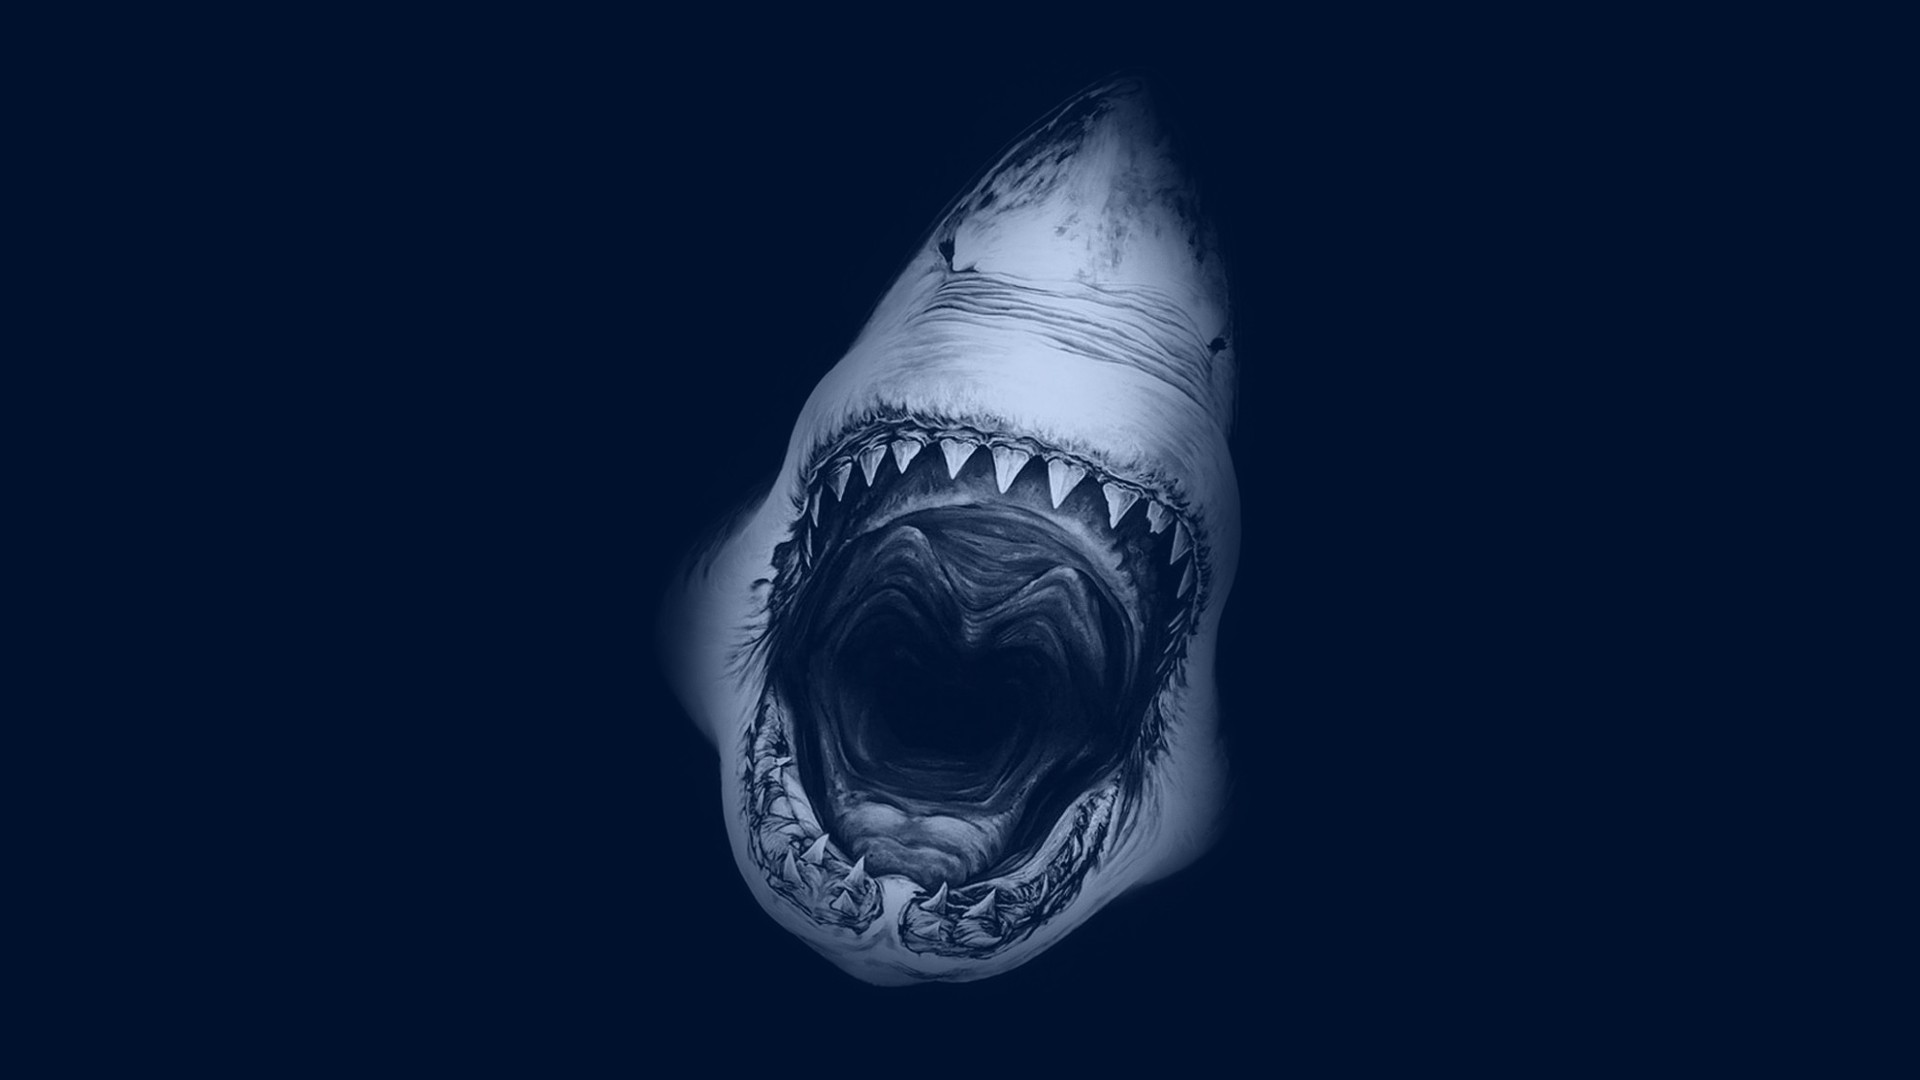 desktop Images sharks, shark, animal